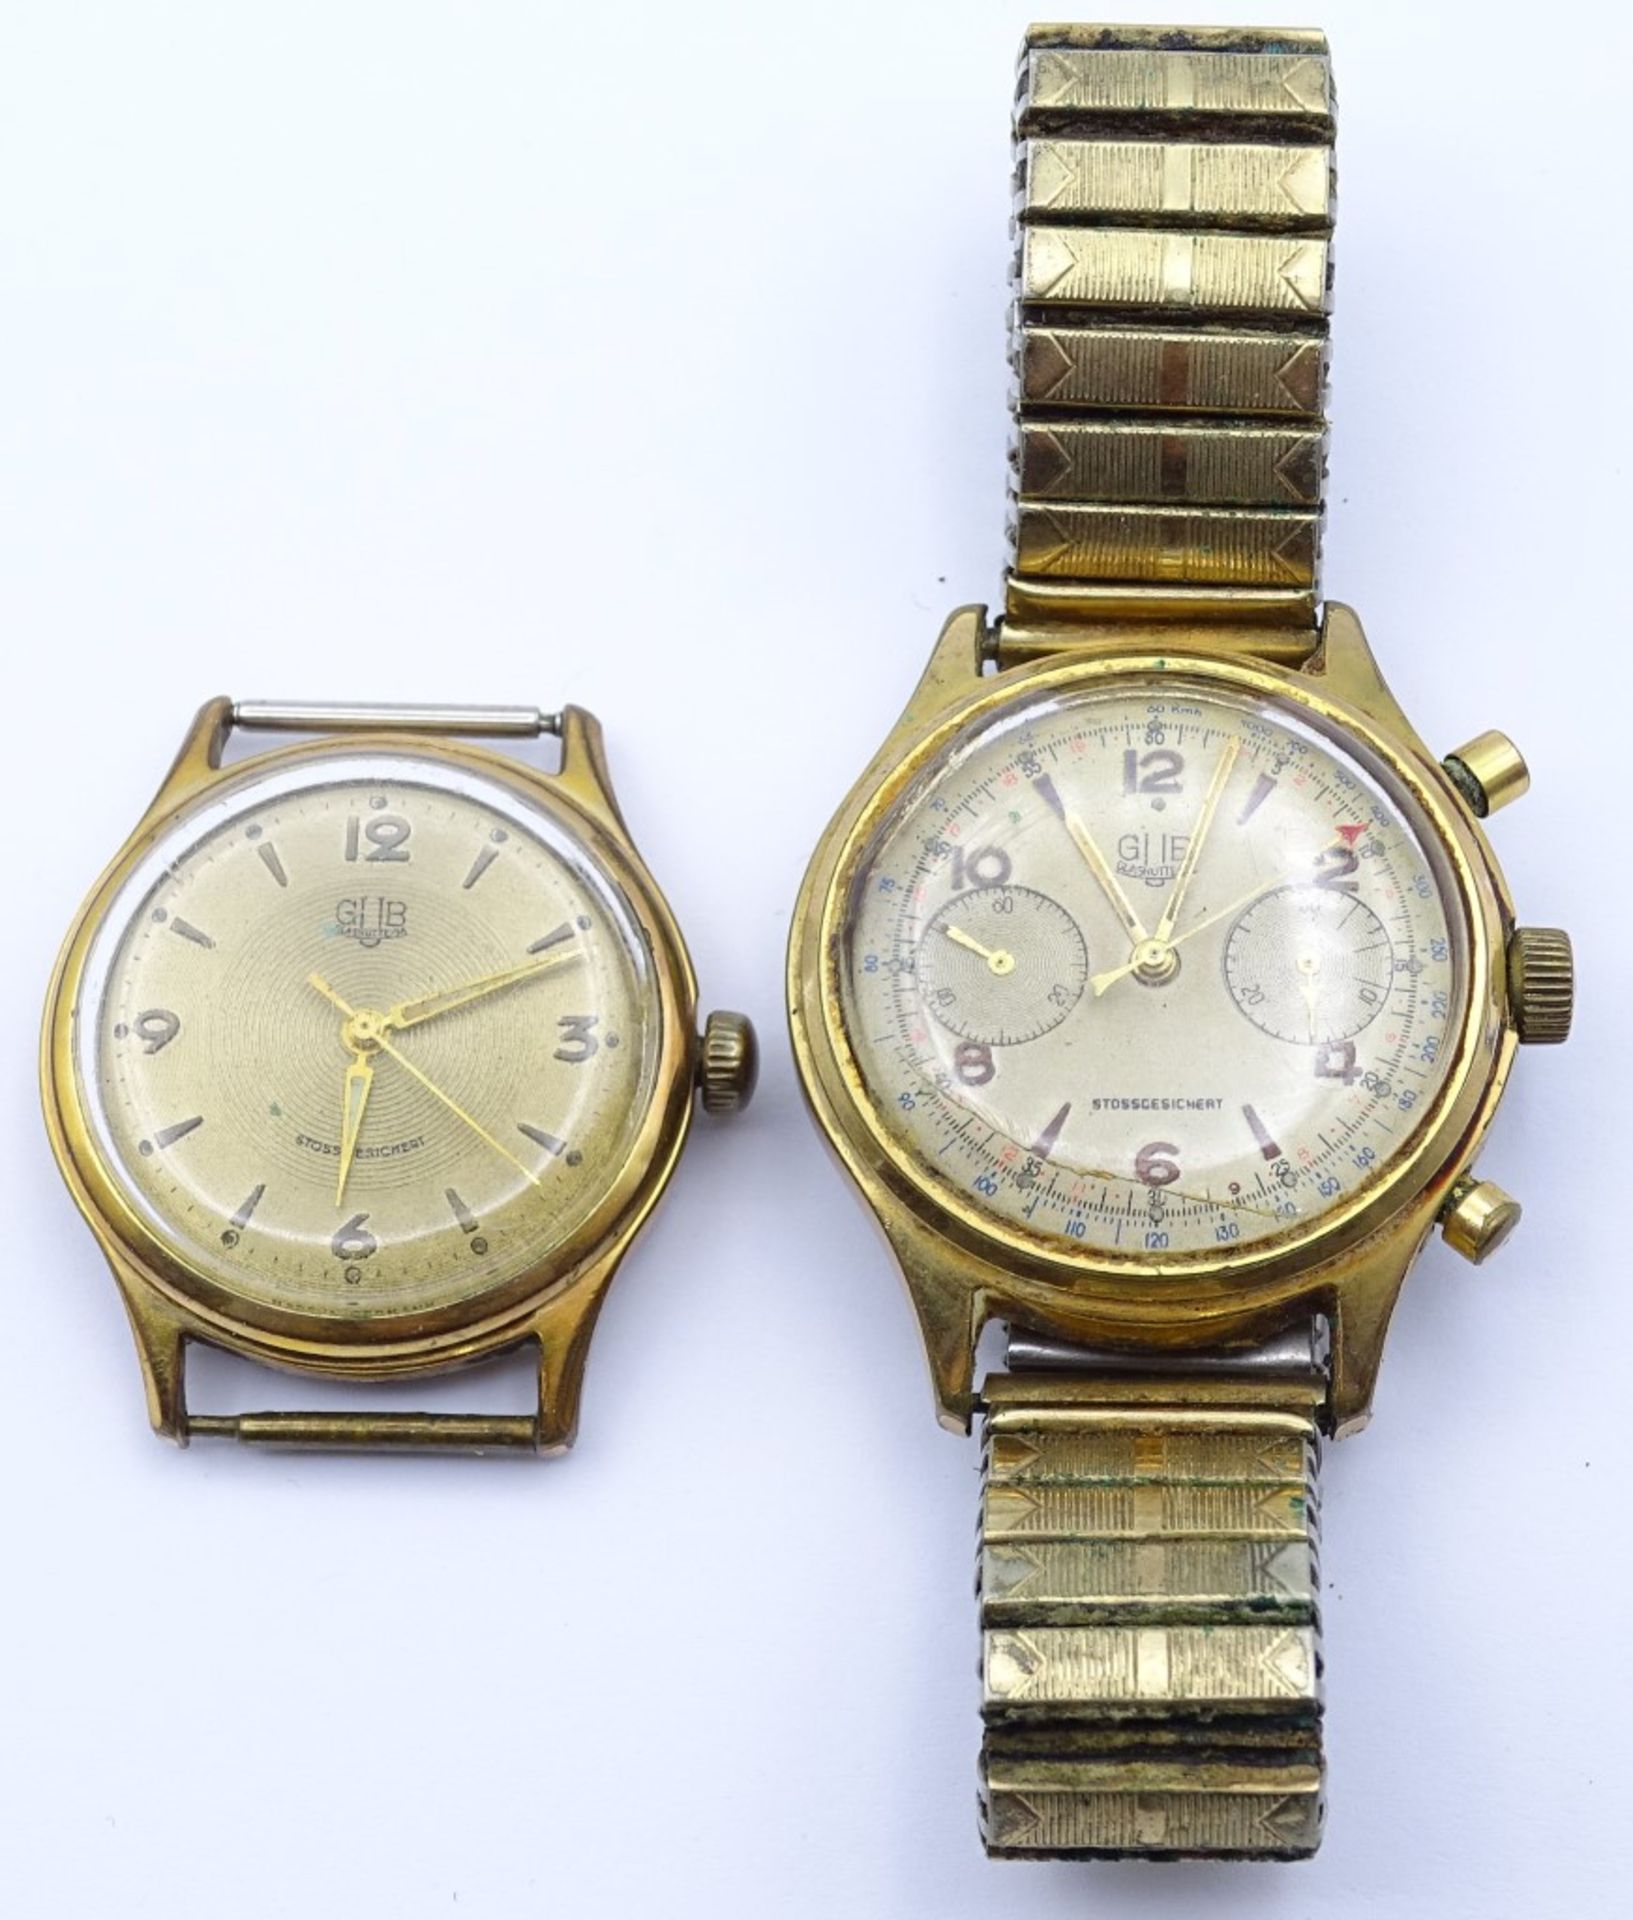 Zwei Armbanduhren "GUB",beide mechanisch,Werke laufen,vergoldet,Alters-u. Gebrauchsspuren, d-33-